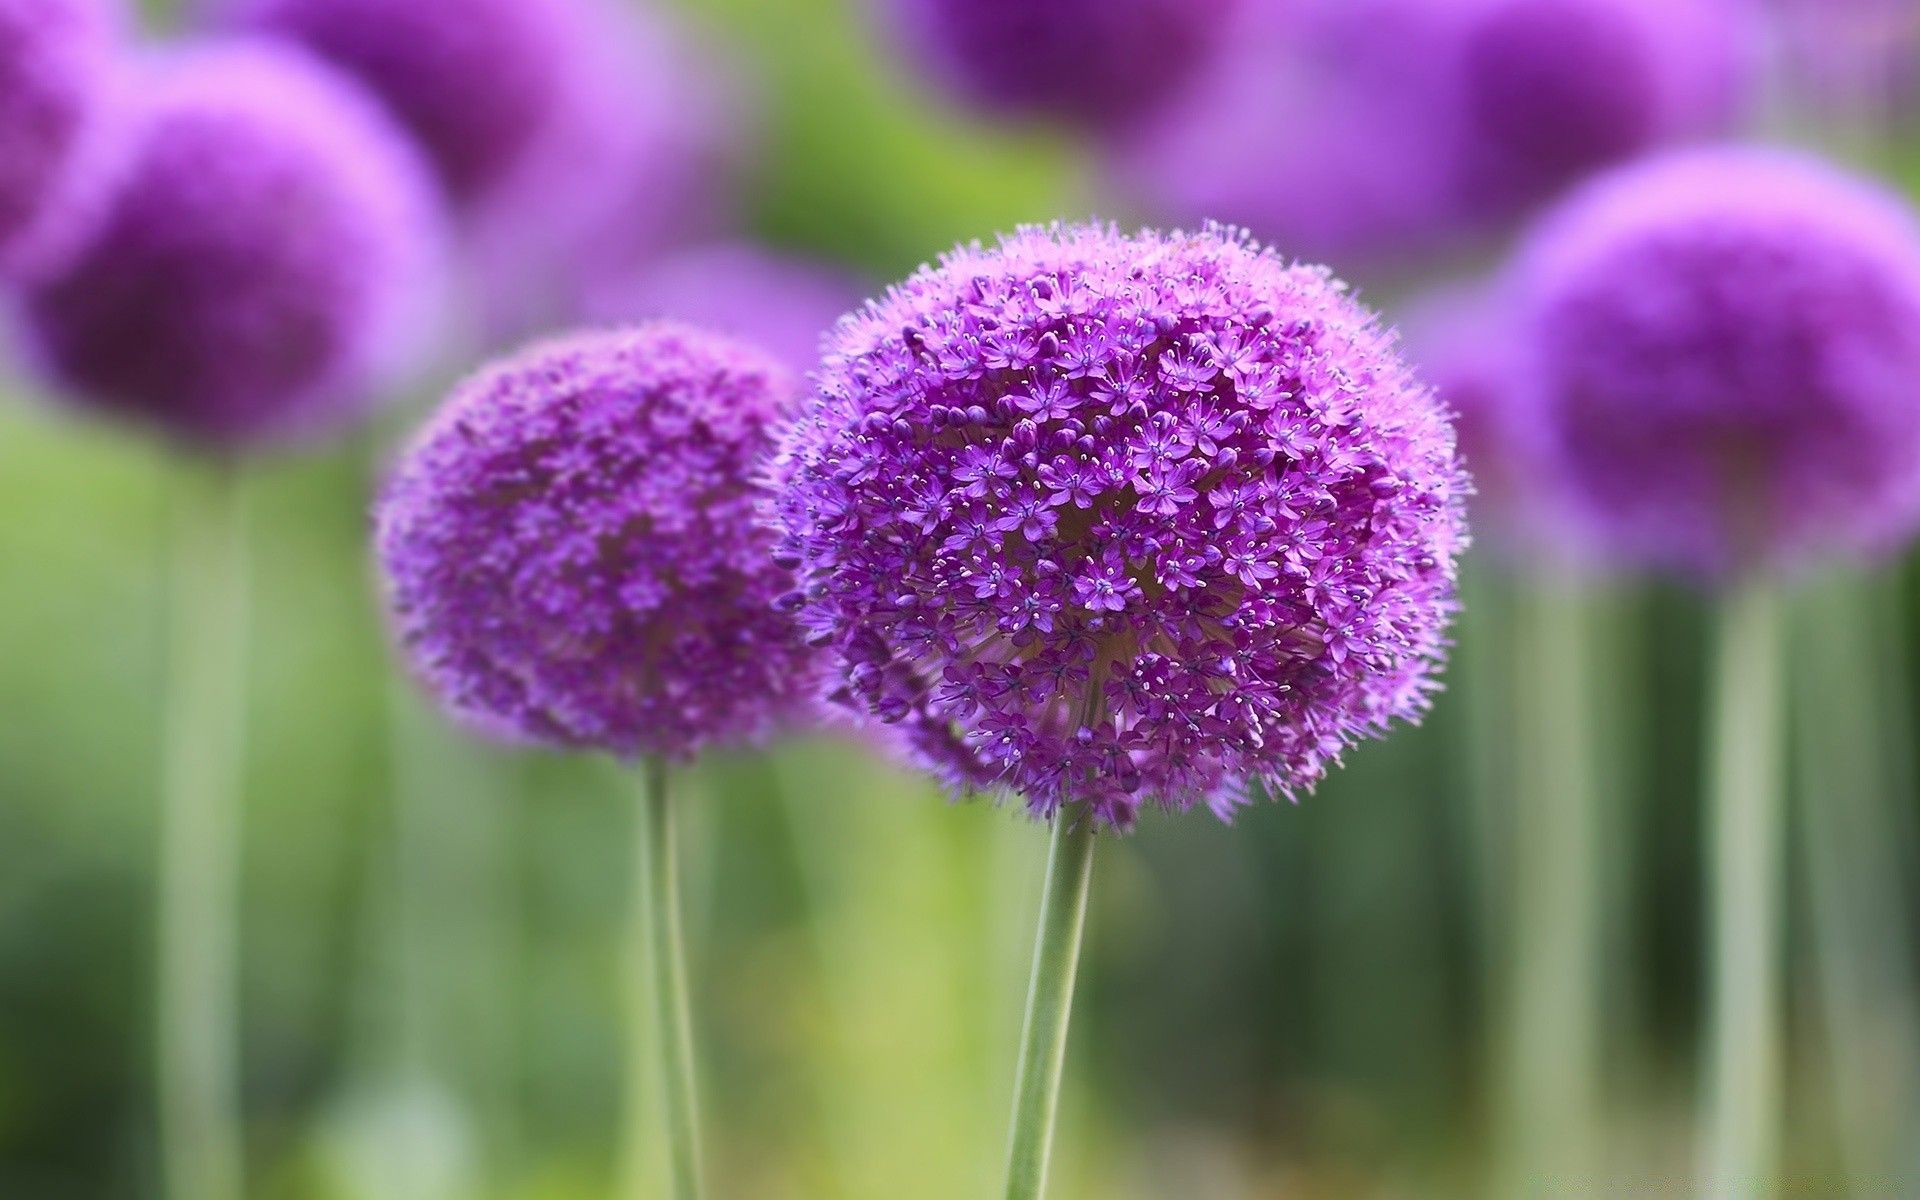 Purple Onion Flowers Field